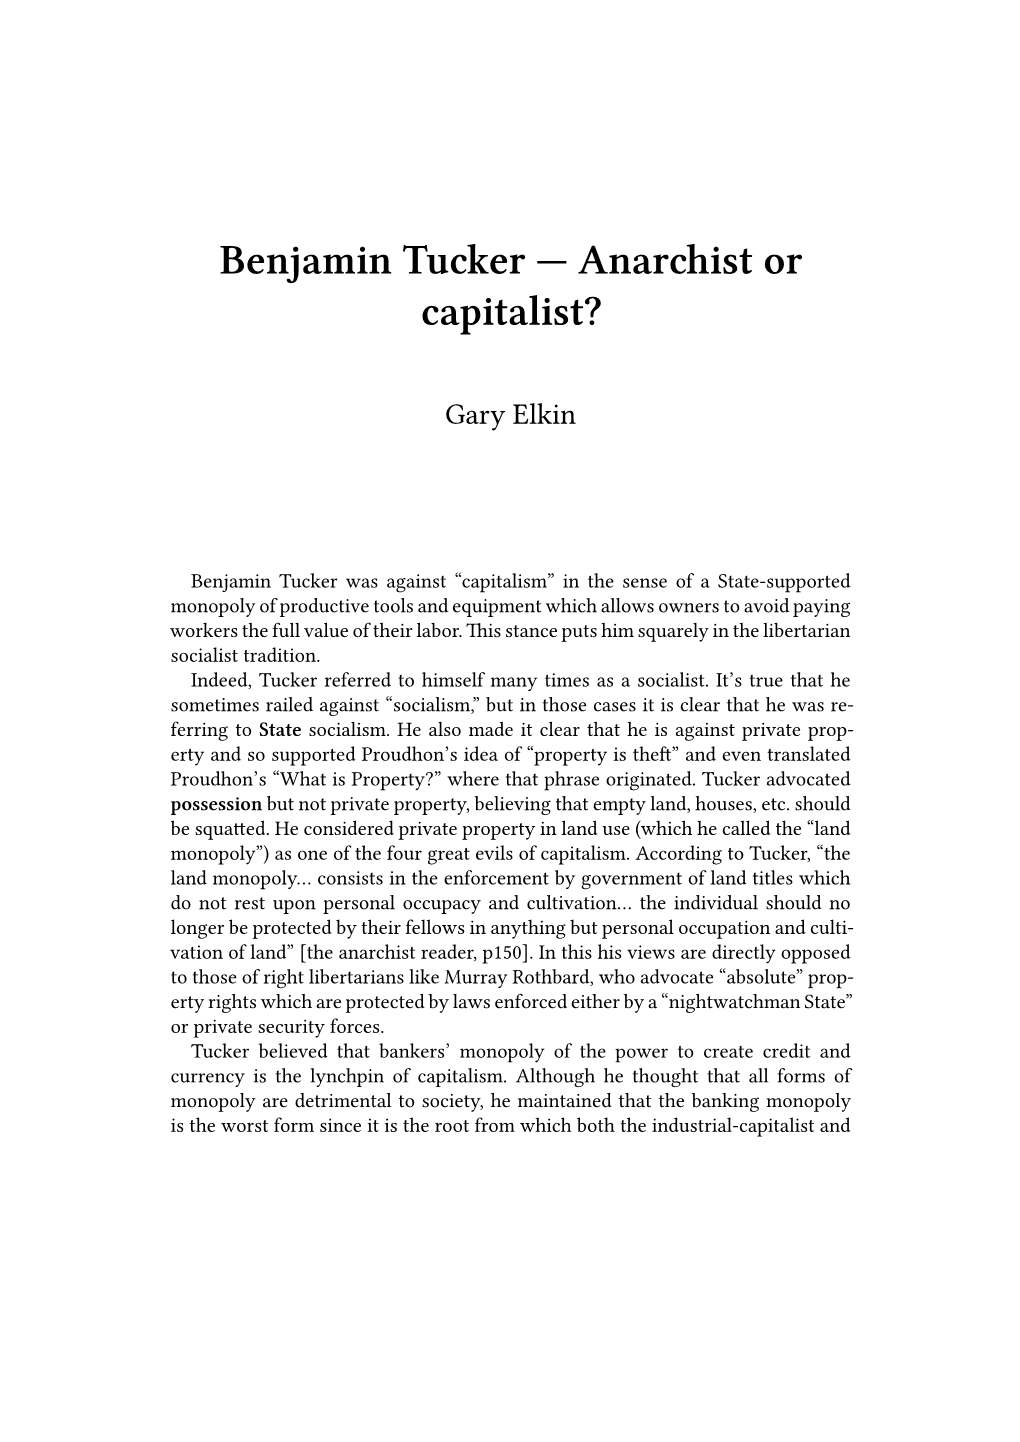 Benjamin Tucker — Anarchist Or Capitalist?